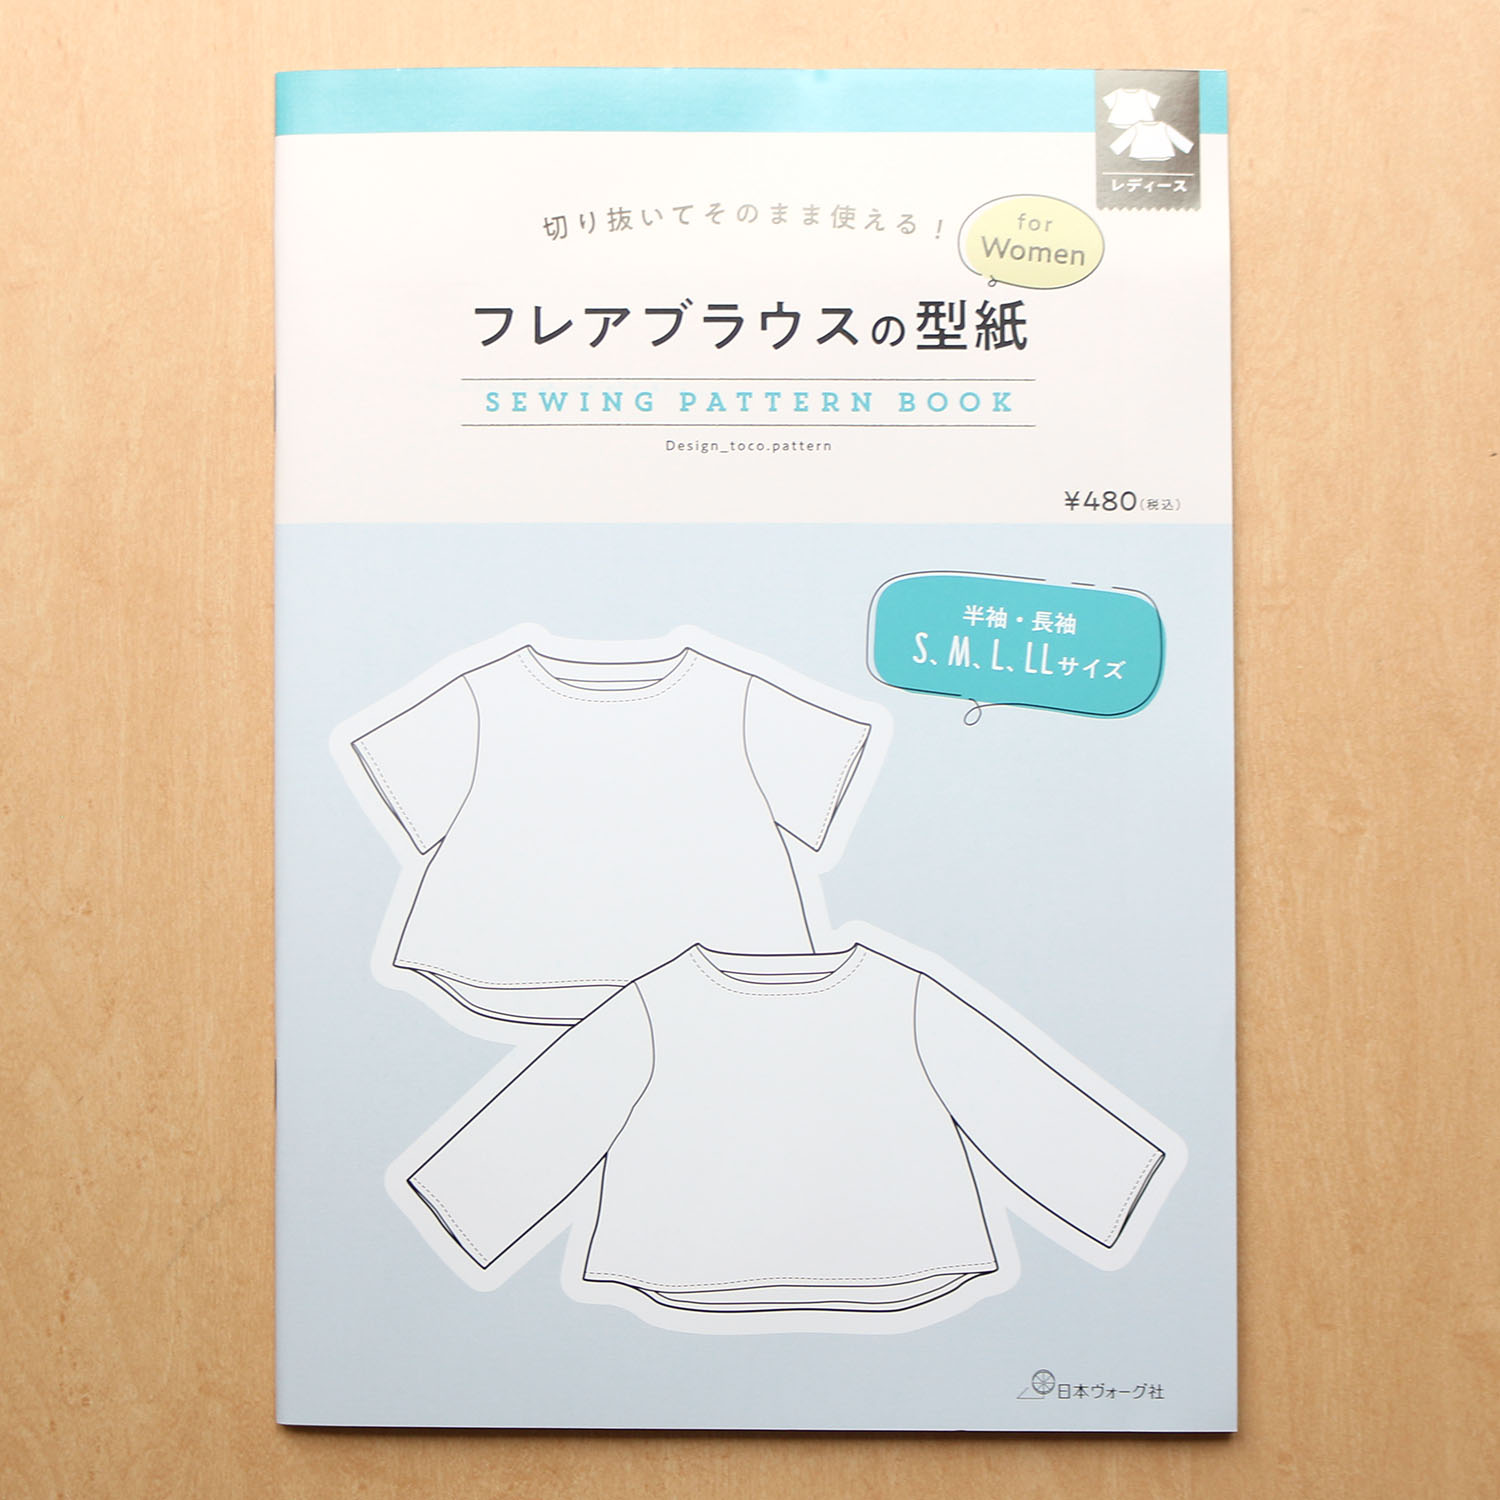 【お取り寄せ・返品不可】NV22058 フレアブラウスの型紙 for Women SEWING PATTERN BOOK/日本ヴォーグ社 (冊)